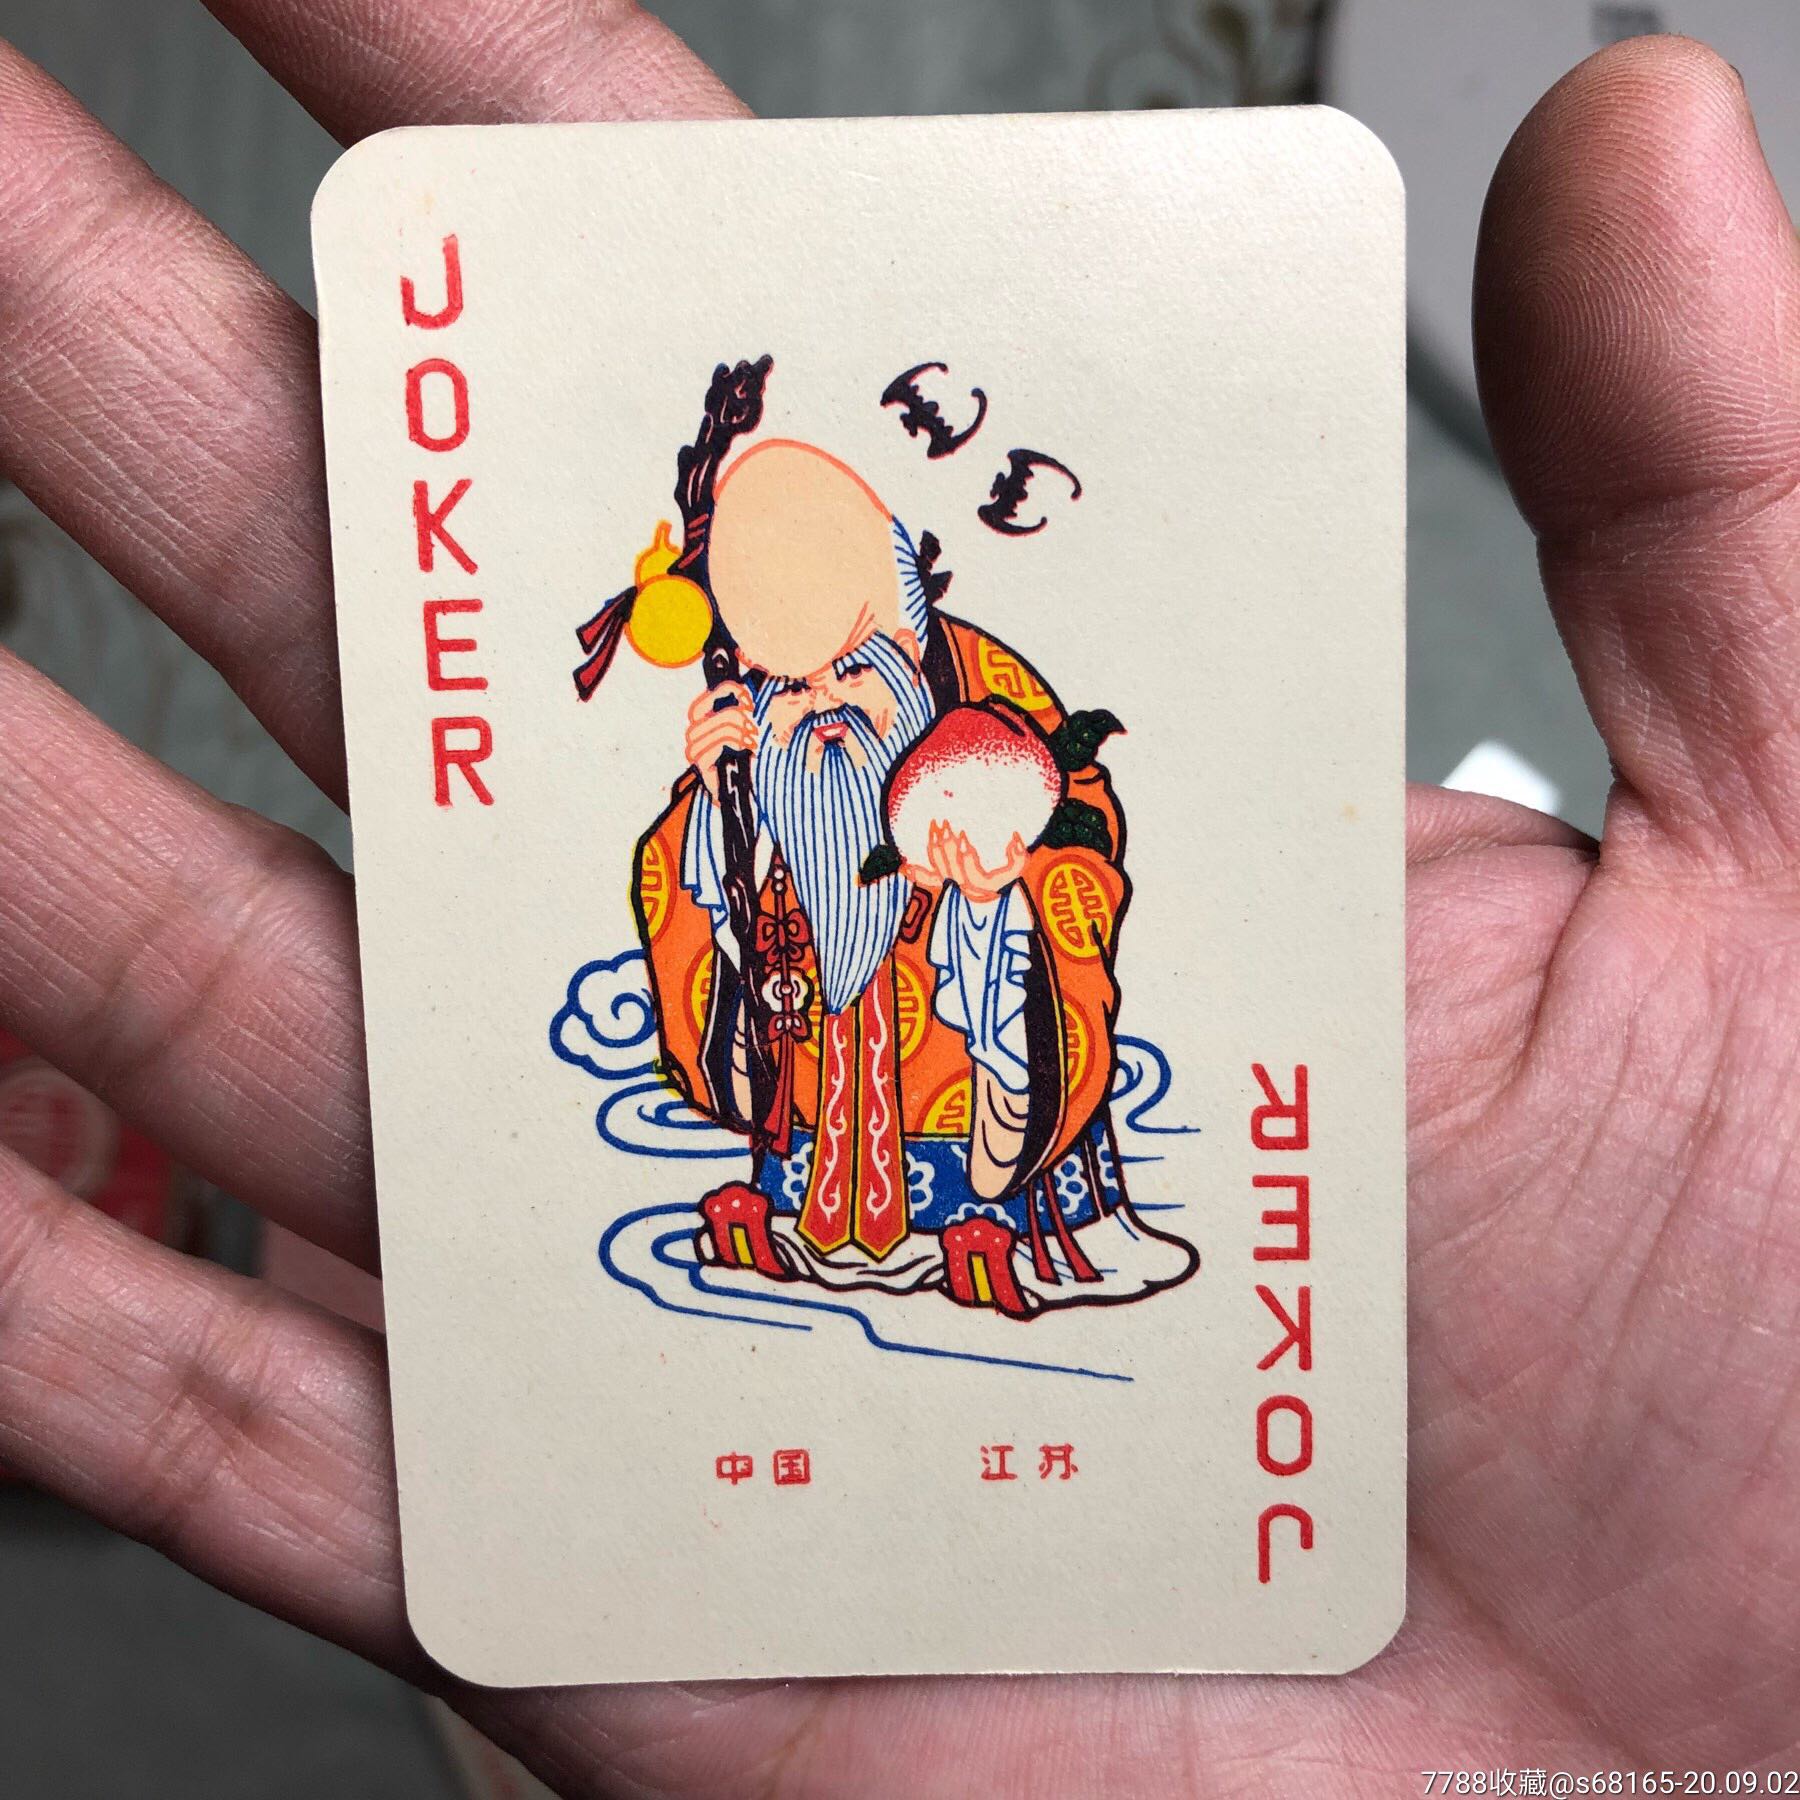 长寿扑克牌843中国制造寿星人物图案大小王,本店其它扑克牌在拍